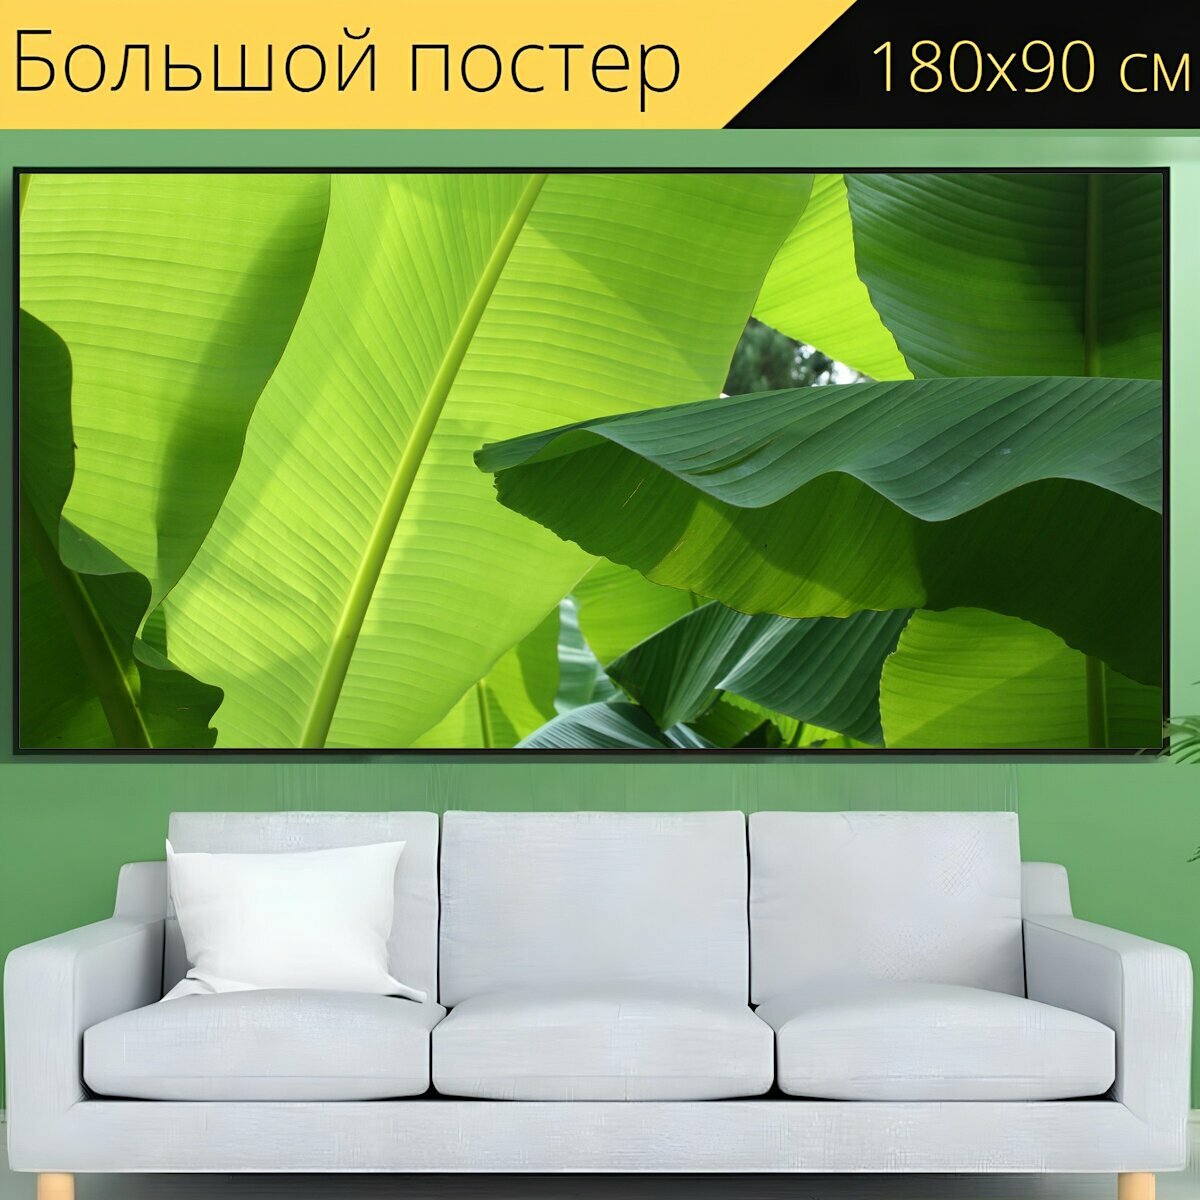 Большой постер "Банановое дерево, завод, природа" 180 x 90 см. для интерьера